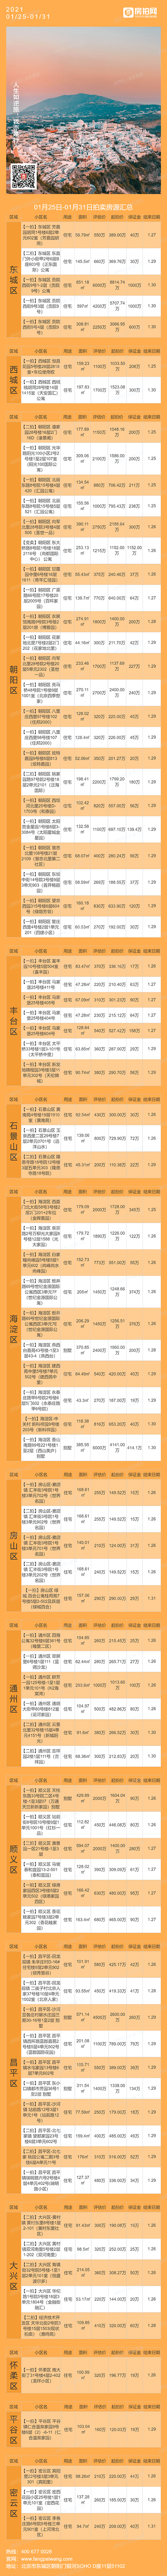 北京1月25日-1月31日法拍房源列表